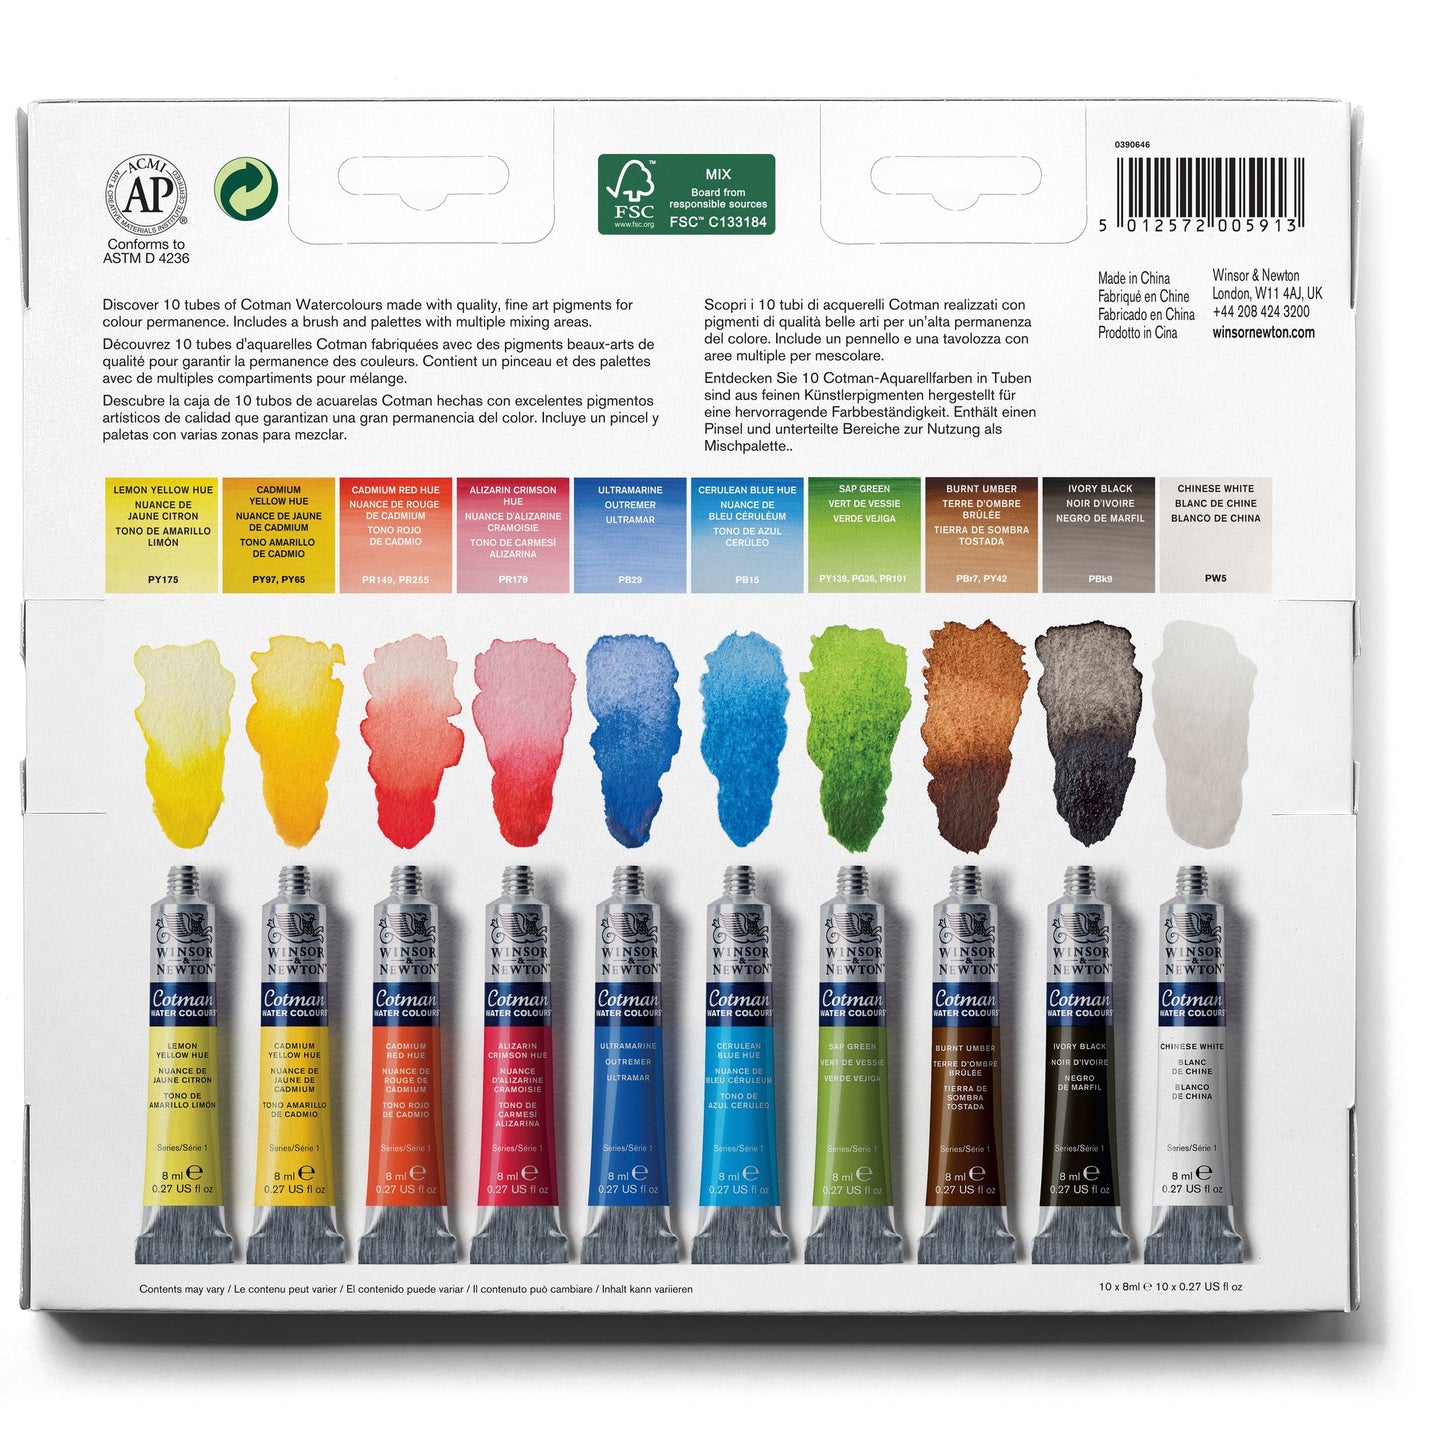 Cotman Watercolour Tube Palette Set